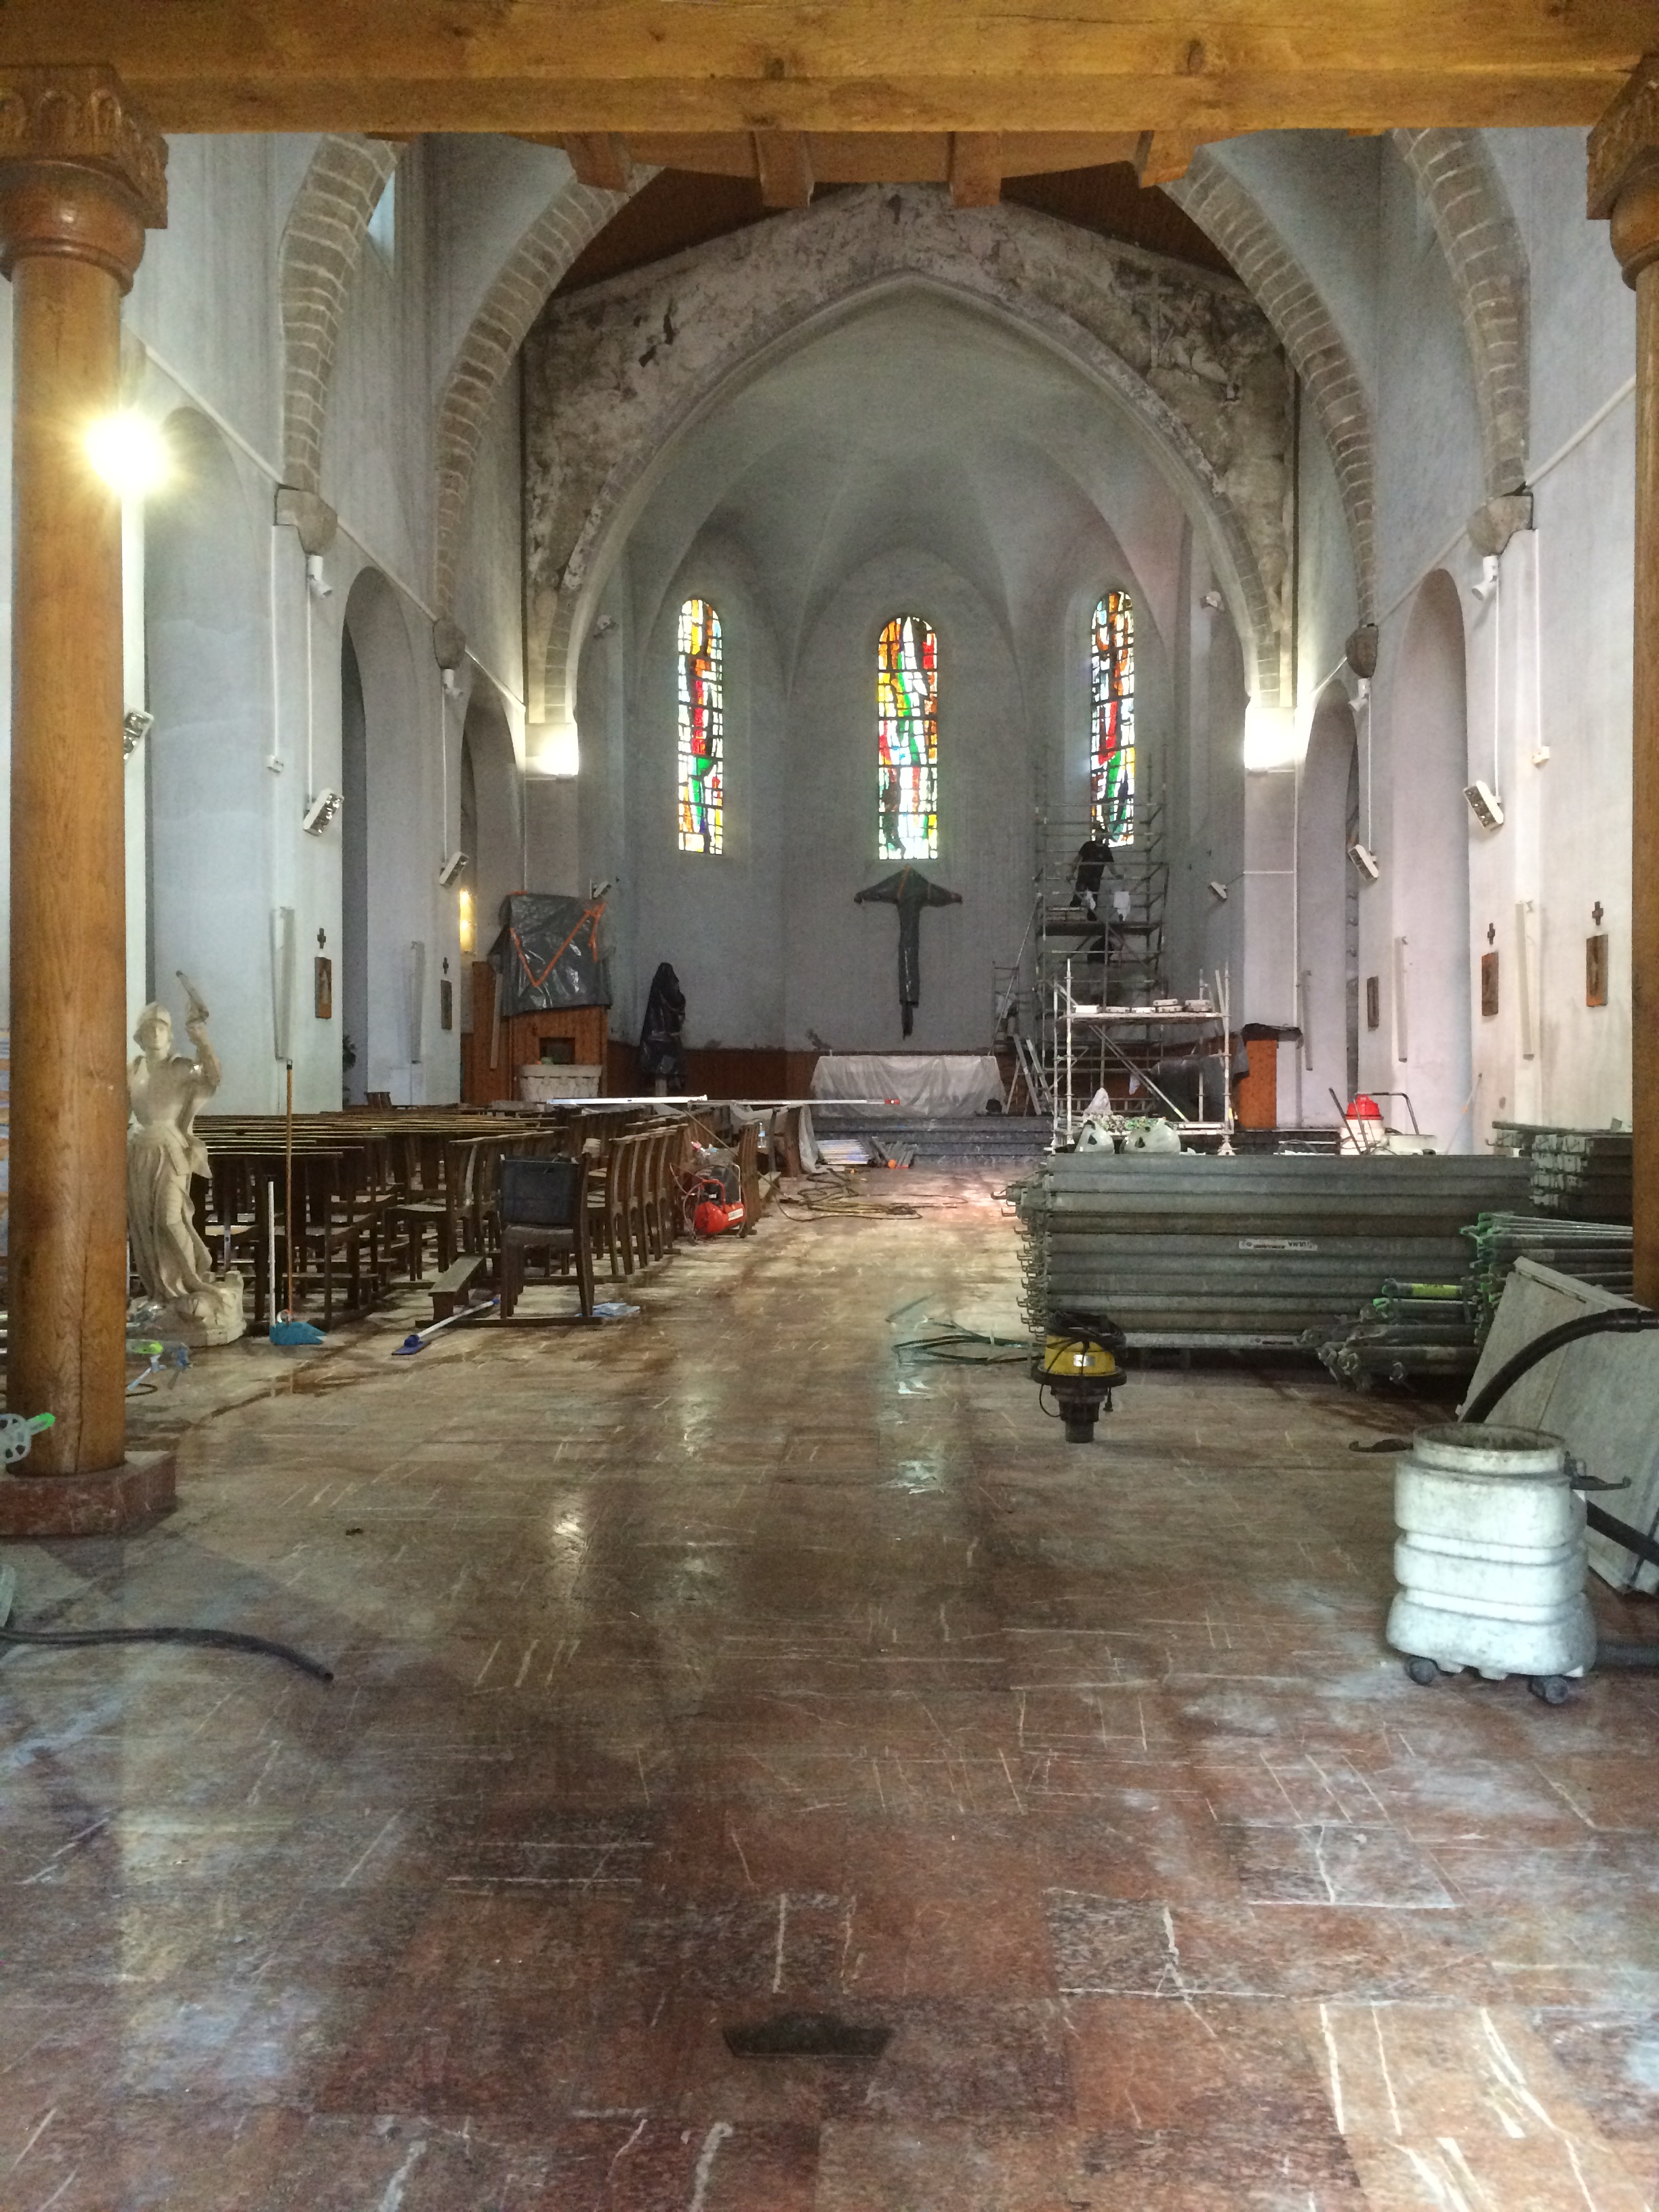 Inside St. Vincent's church